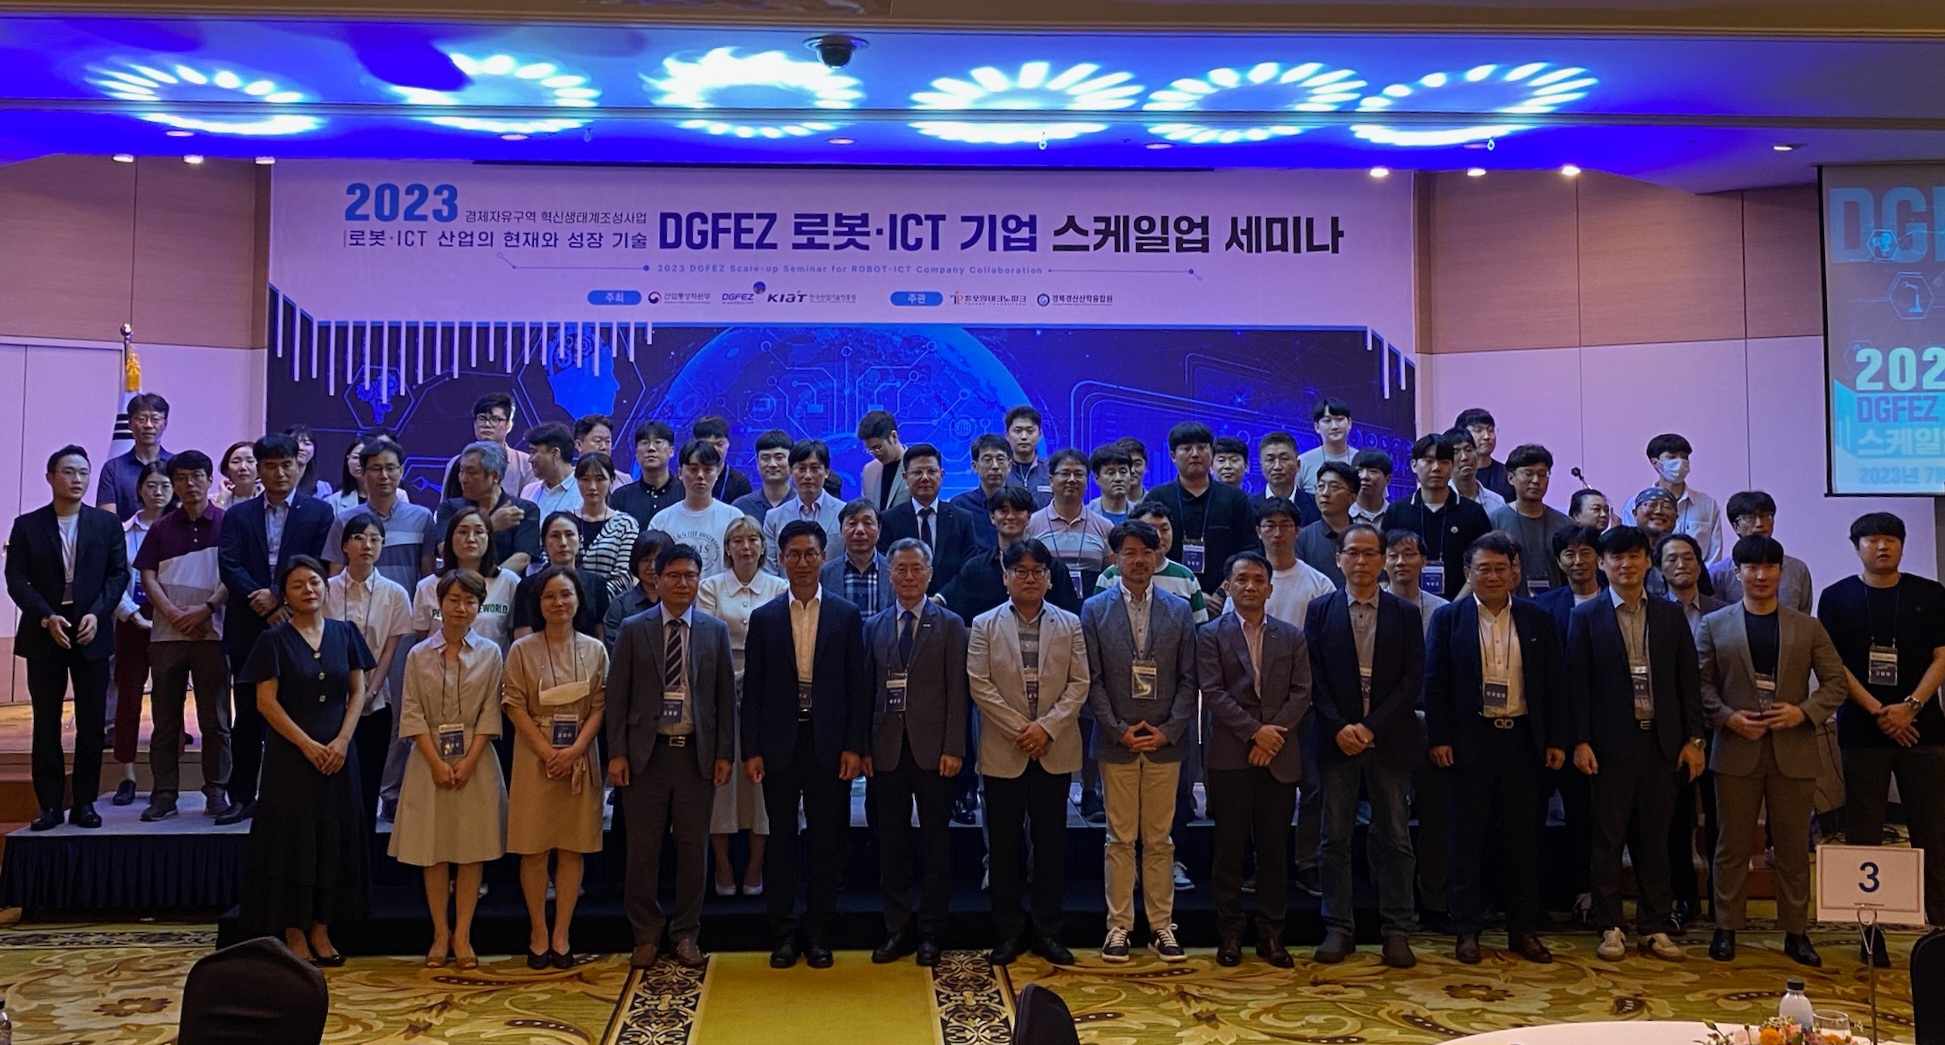  大邱慶北経済自由区域庁(DGFEZ)、2023年ロボット·ICT企業スケールアップセミナー開催